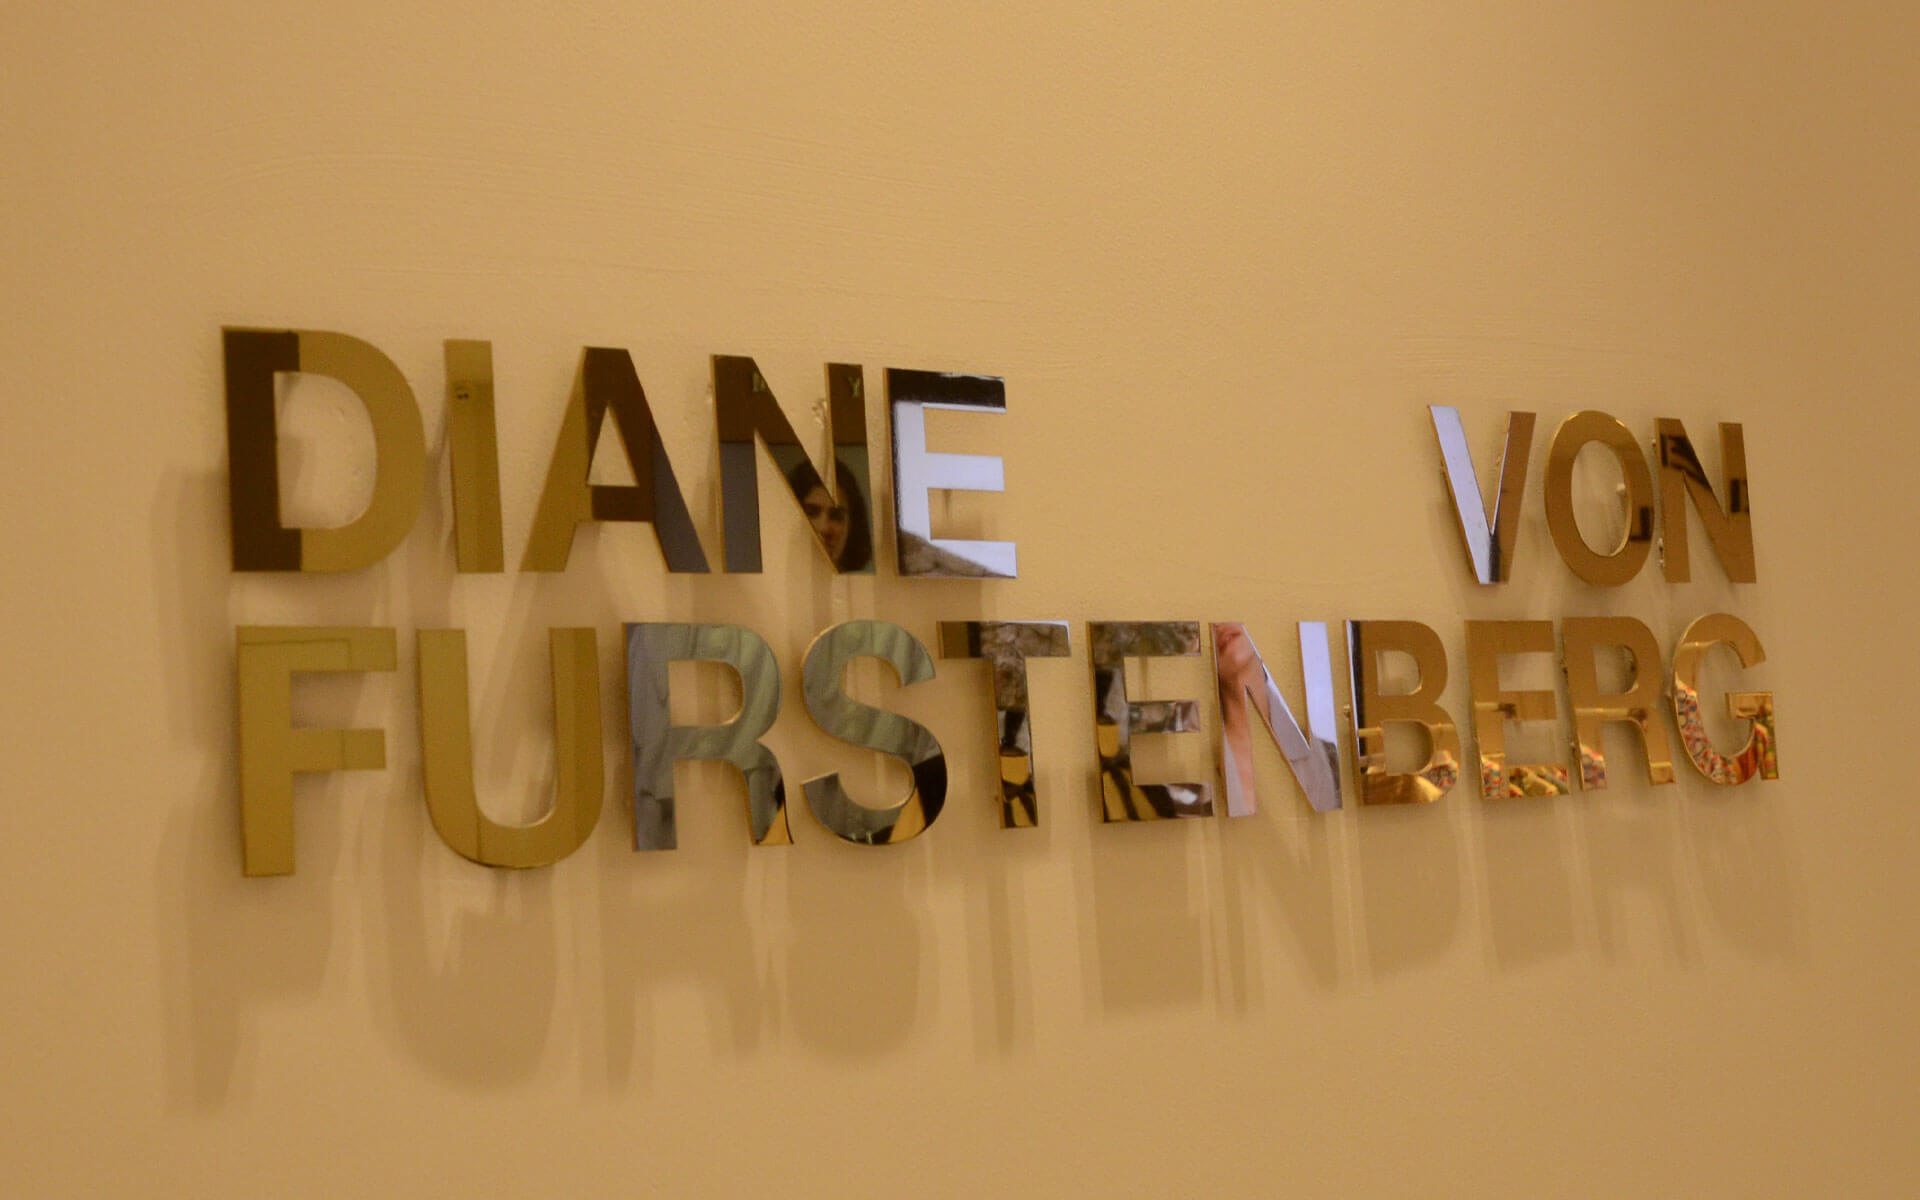 Laser Cut Metal Signs for Diane von Furstenberg